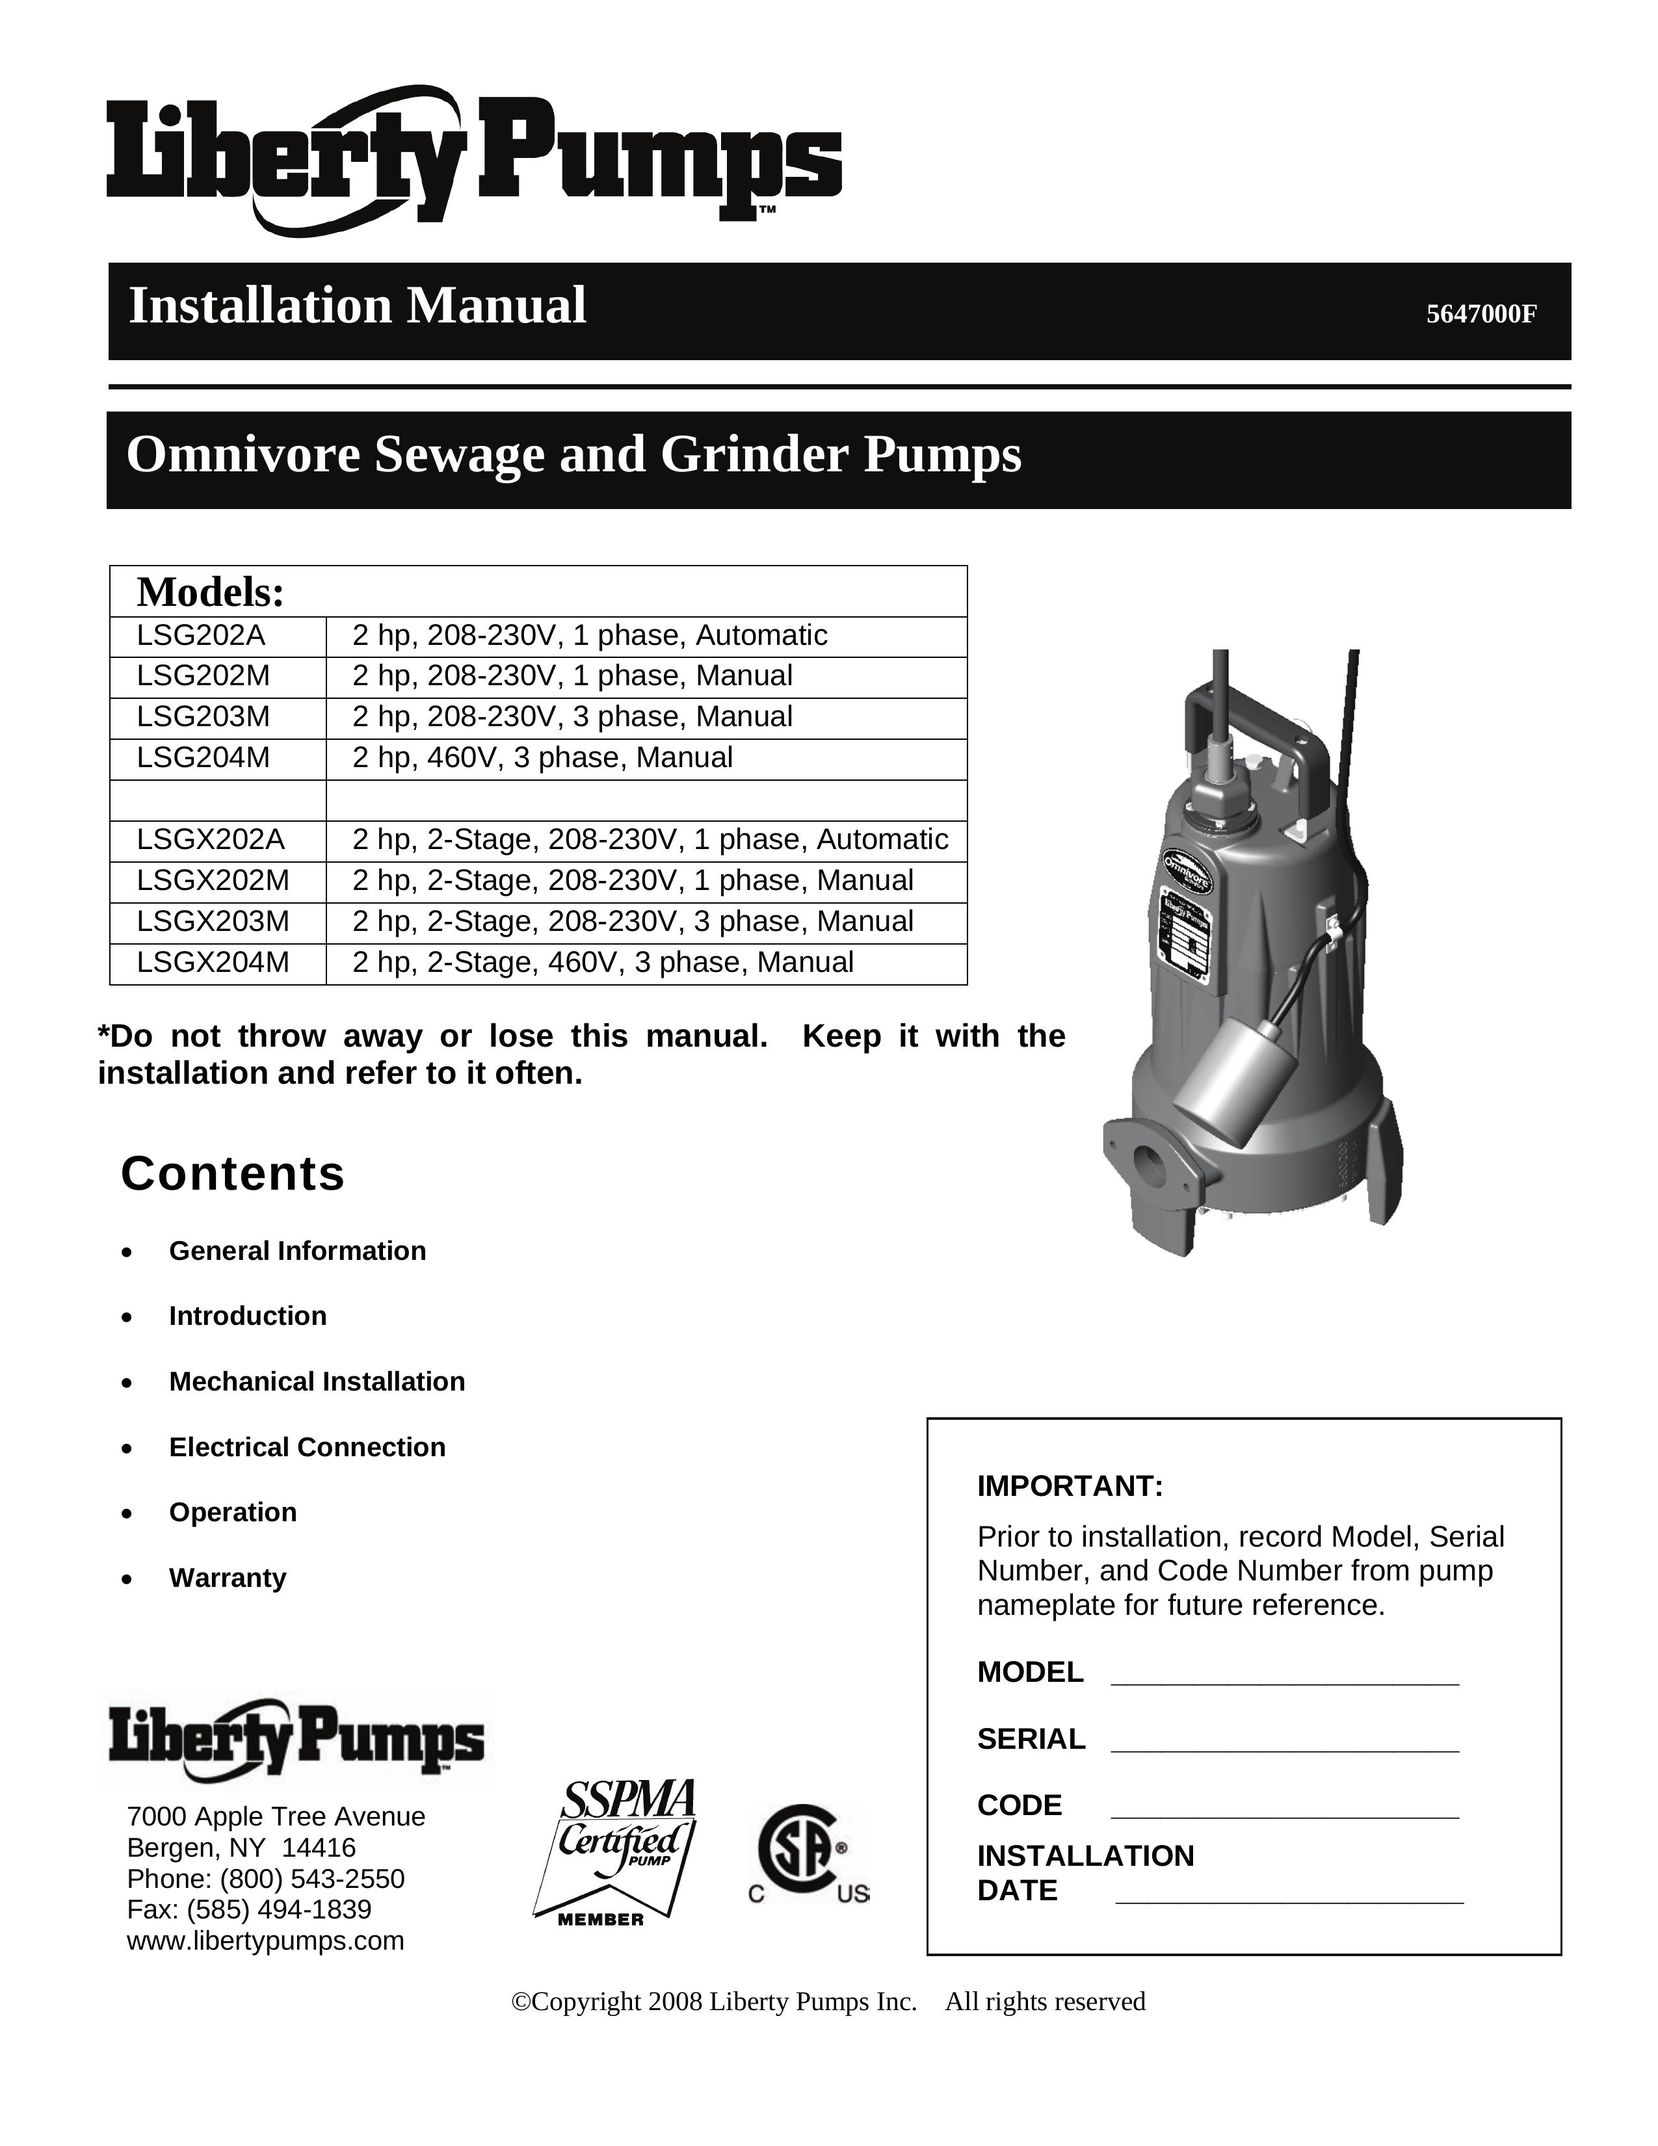 HP (Hewlett-Packard) LSG204M Grinder User Manual